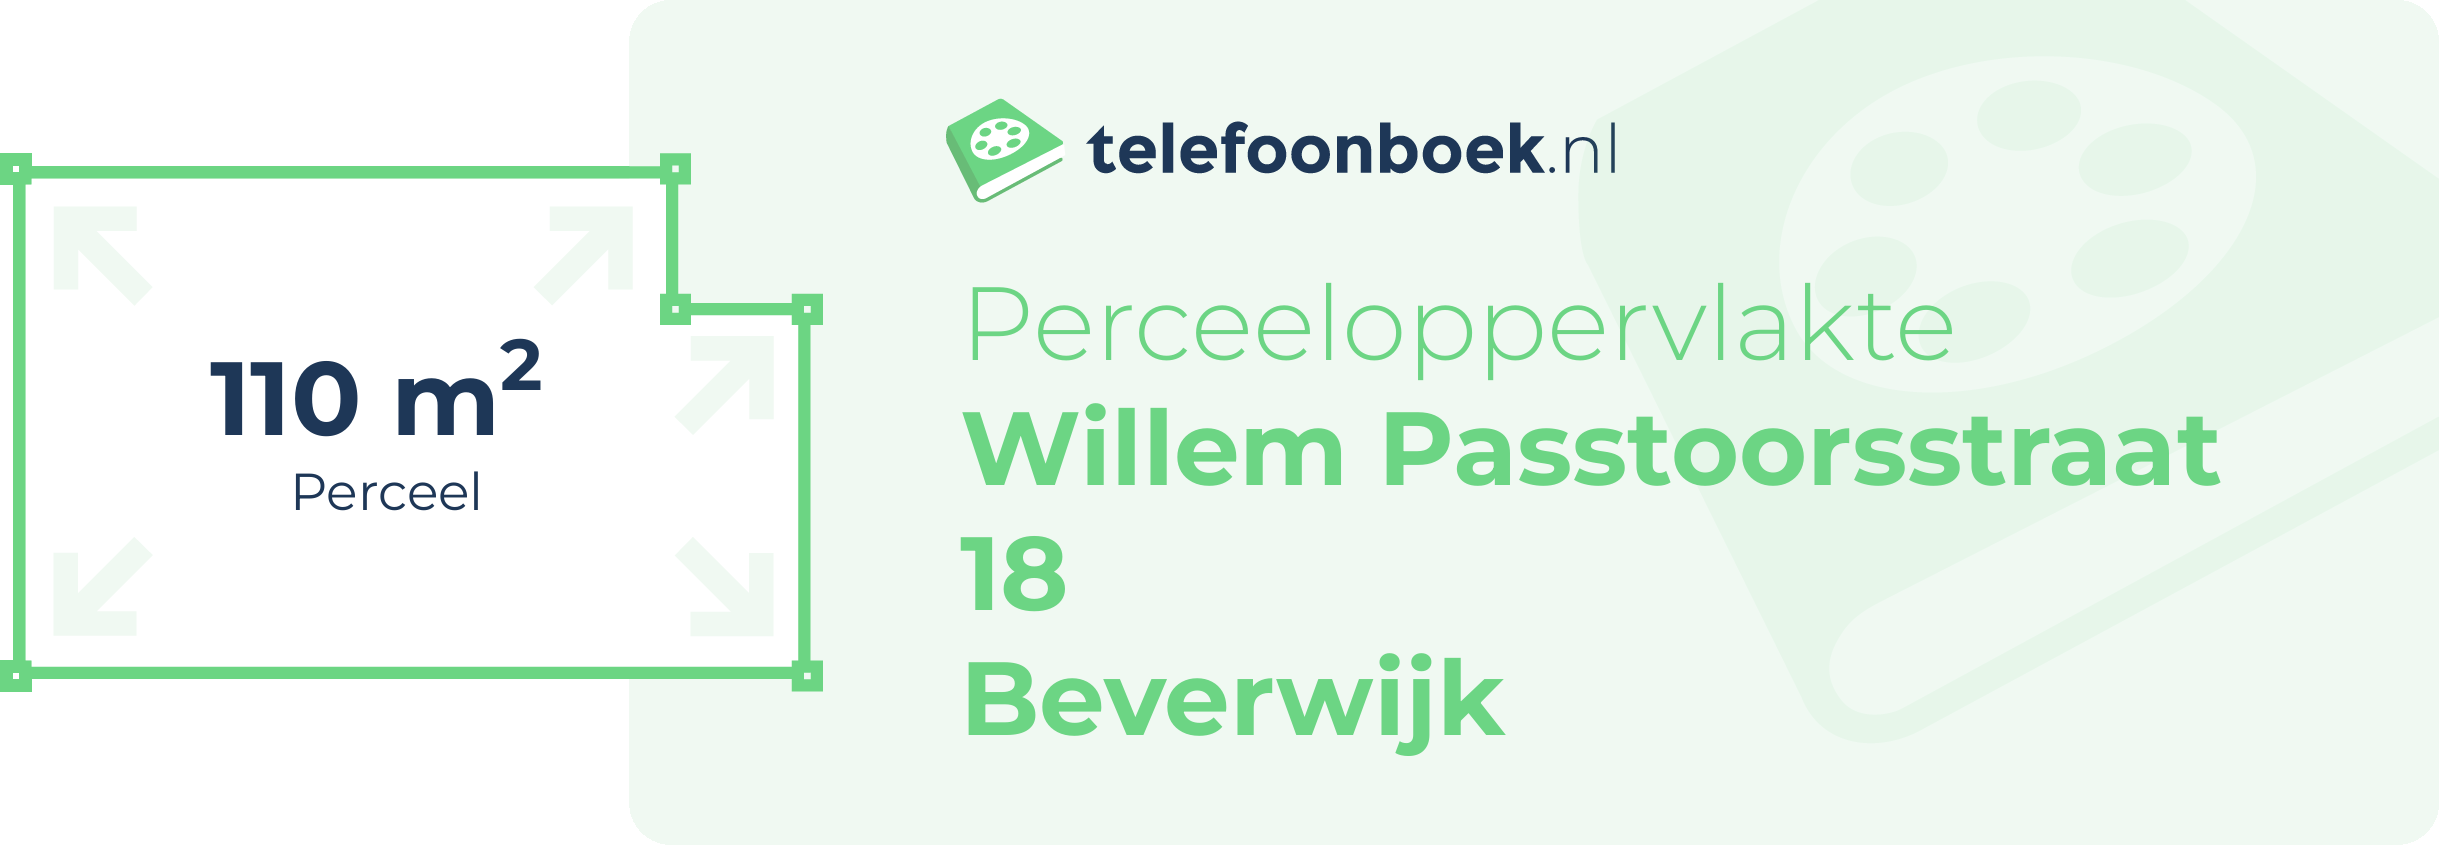 Perceeloppervlakte Willem Passtoorsstraat 18 Beverwijk